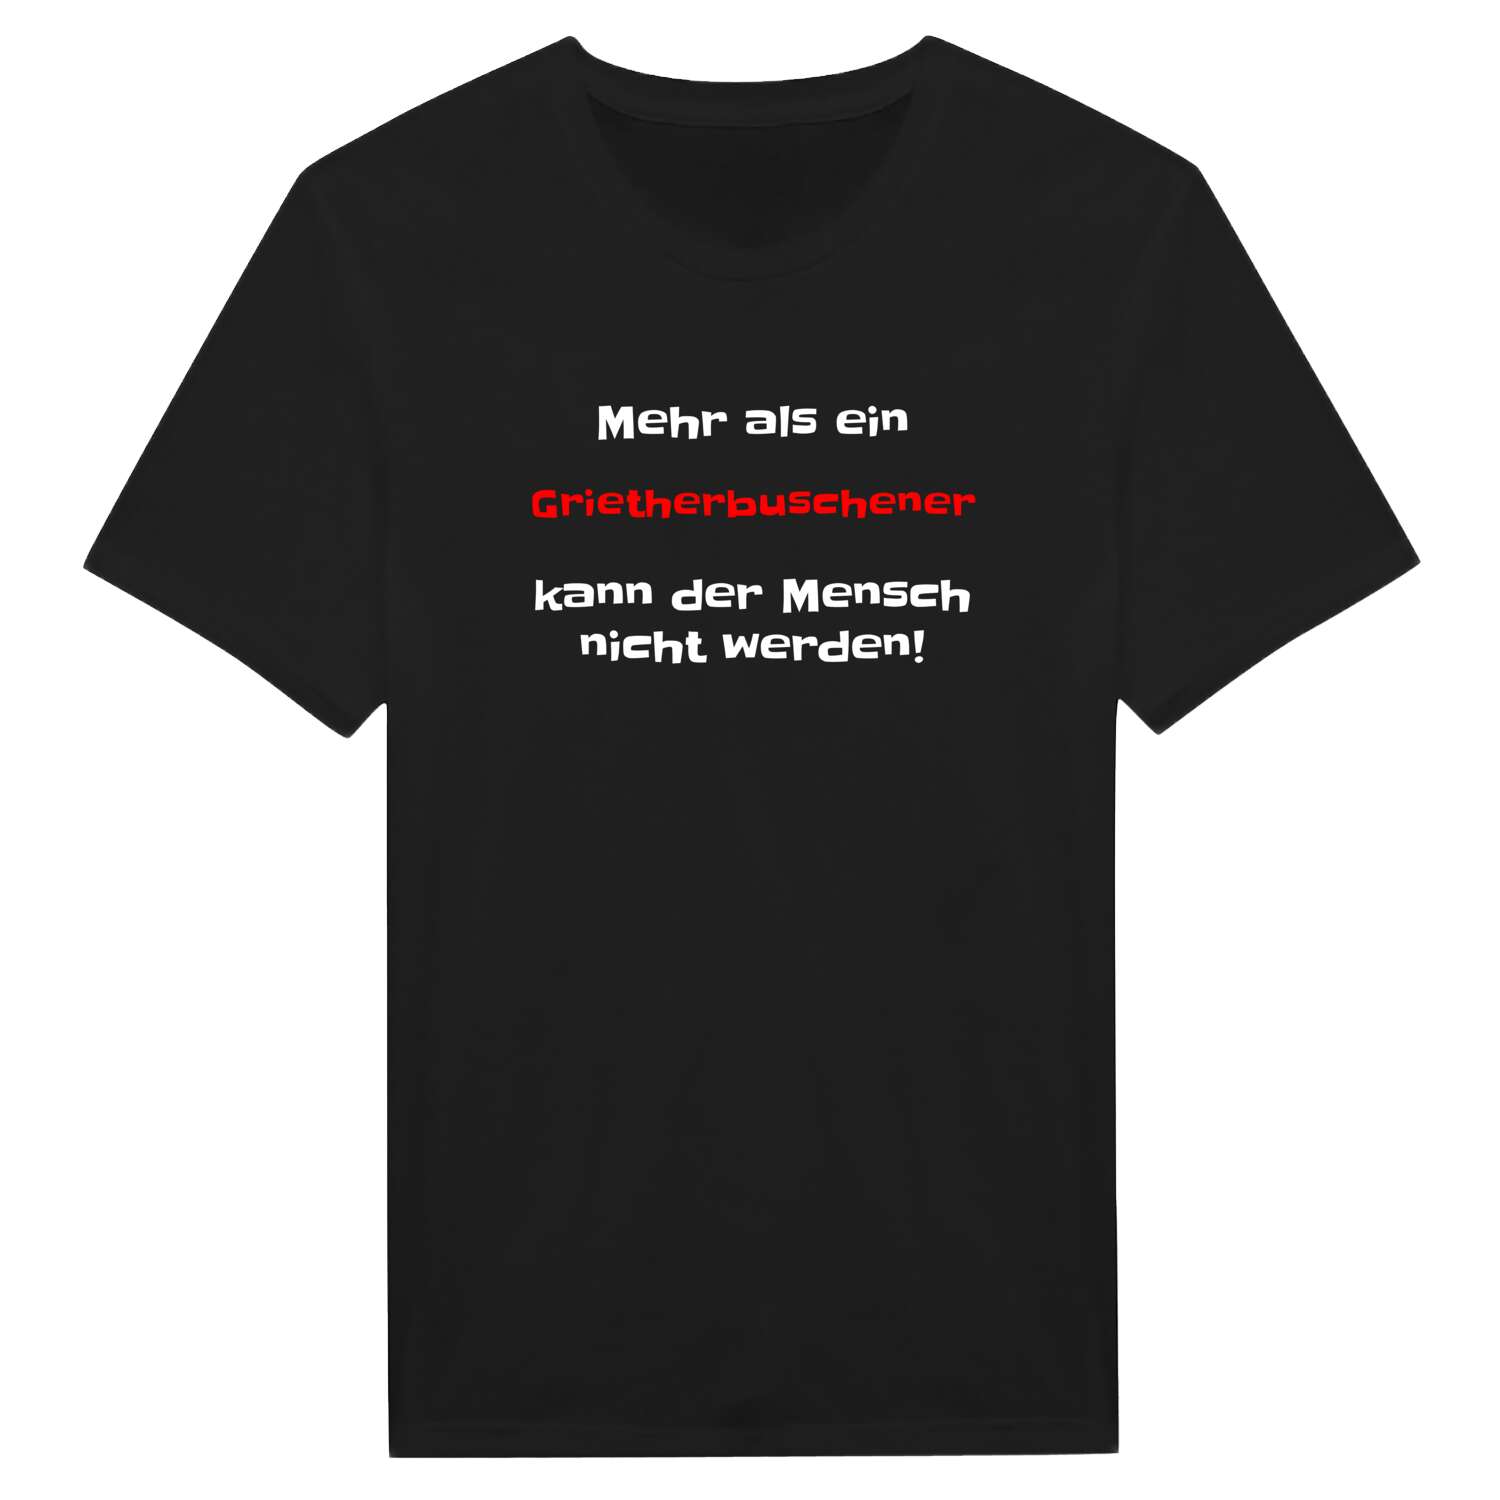 Grietherbusch T-Shirt »Mehr als ein«